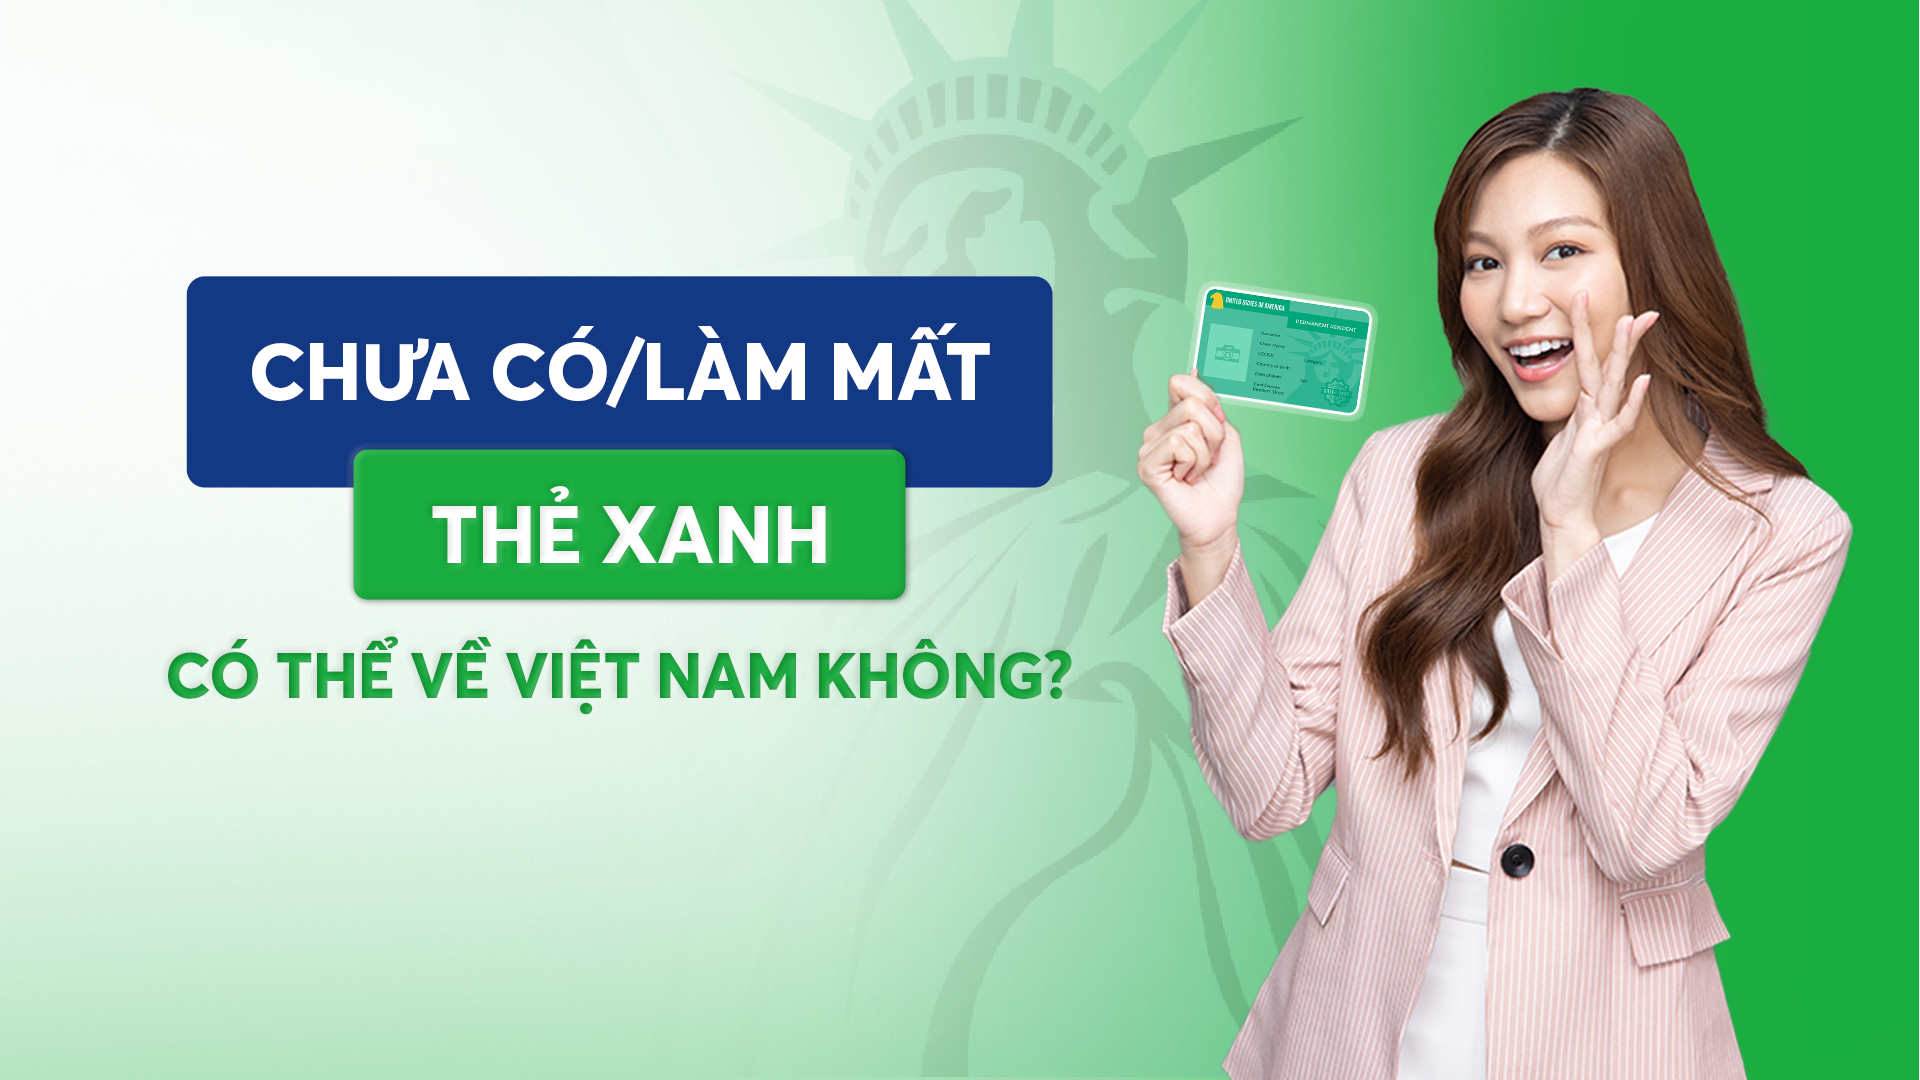 Chưa có/làm mất thẻ xanh có thể về Việt Nam không?